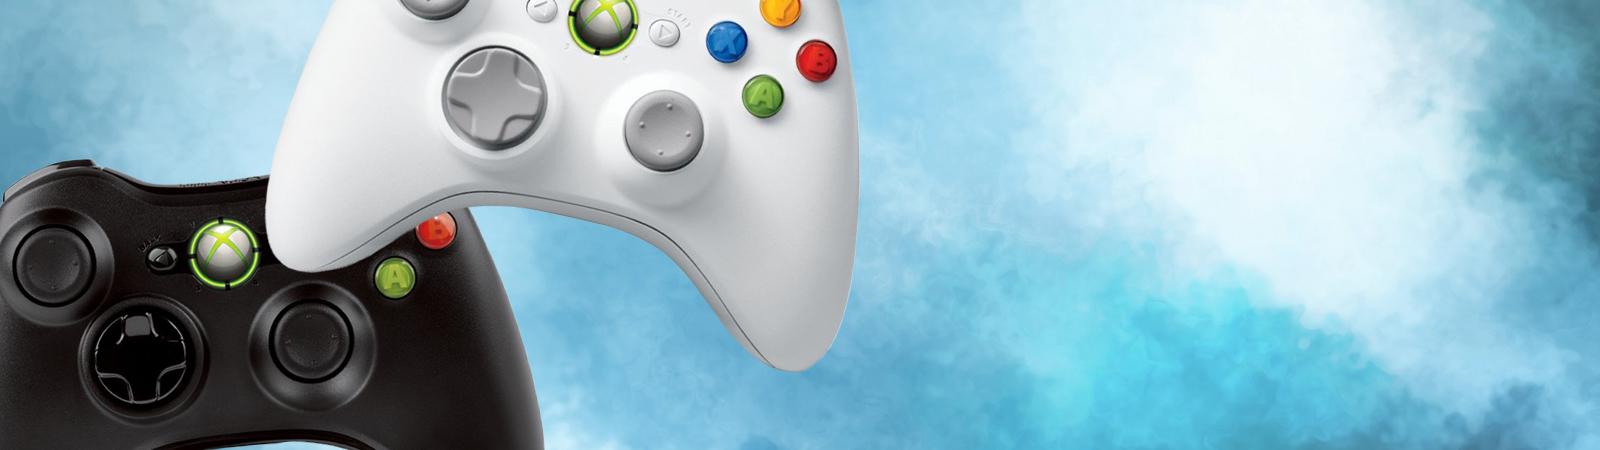 Aan boord Vruchtbaar redactioneel Xbox 360 consoles, Xbox 360 games & accessoires kopen bij GooHoo!